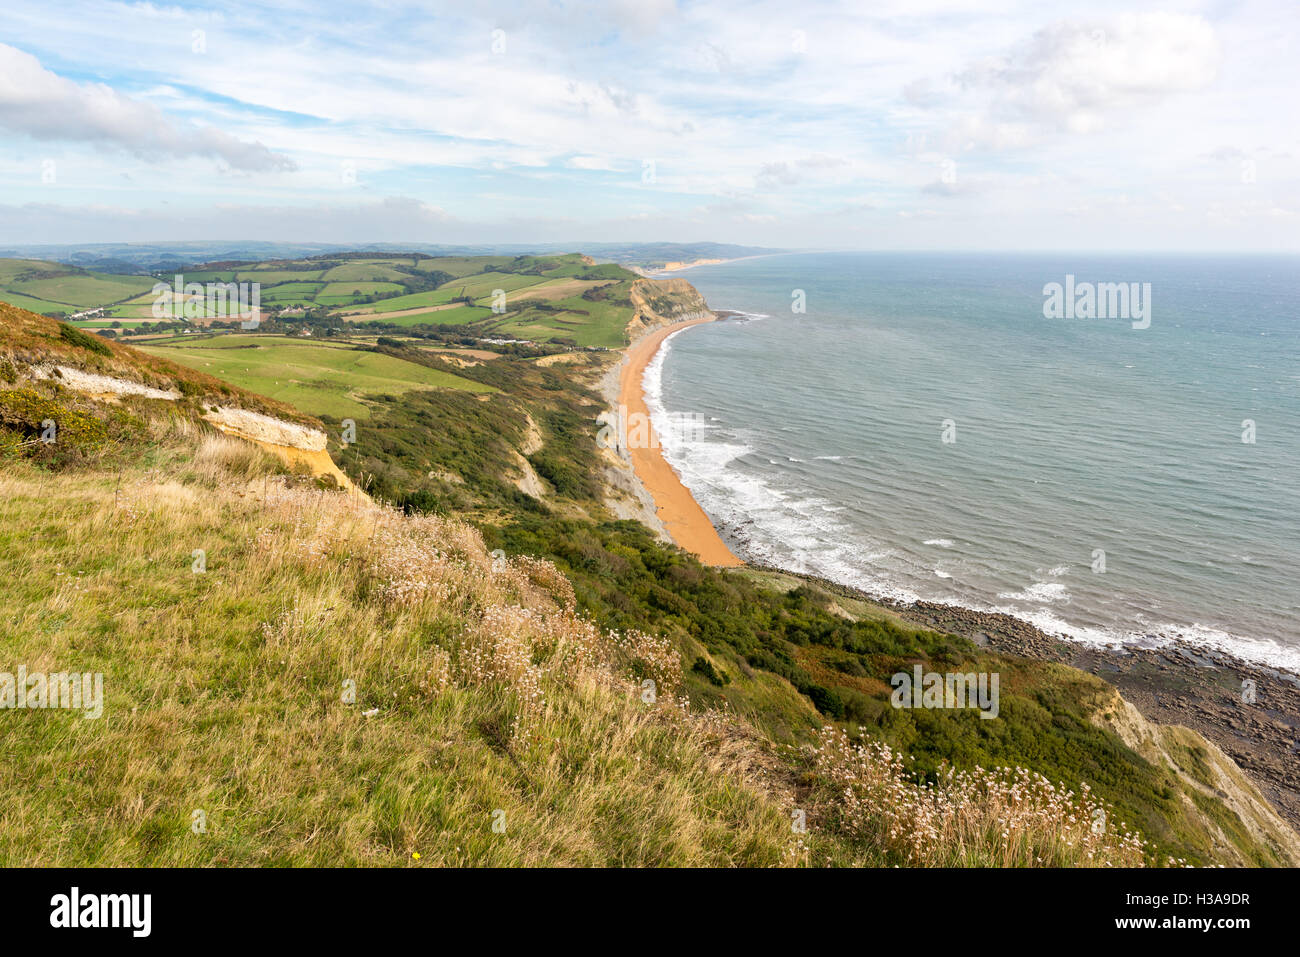 Guardando ad est dalla sommità del cappuccio dorato, Dorset, Regno Unito, il punto più alto sulla costa sud dell'Inghilterra, verso il lontano West Bay. Foto Stock